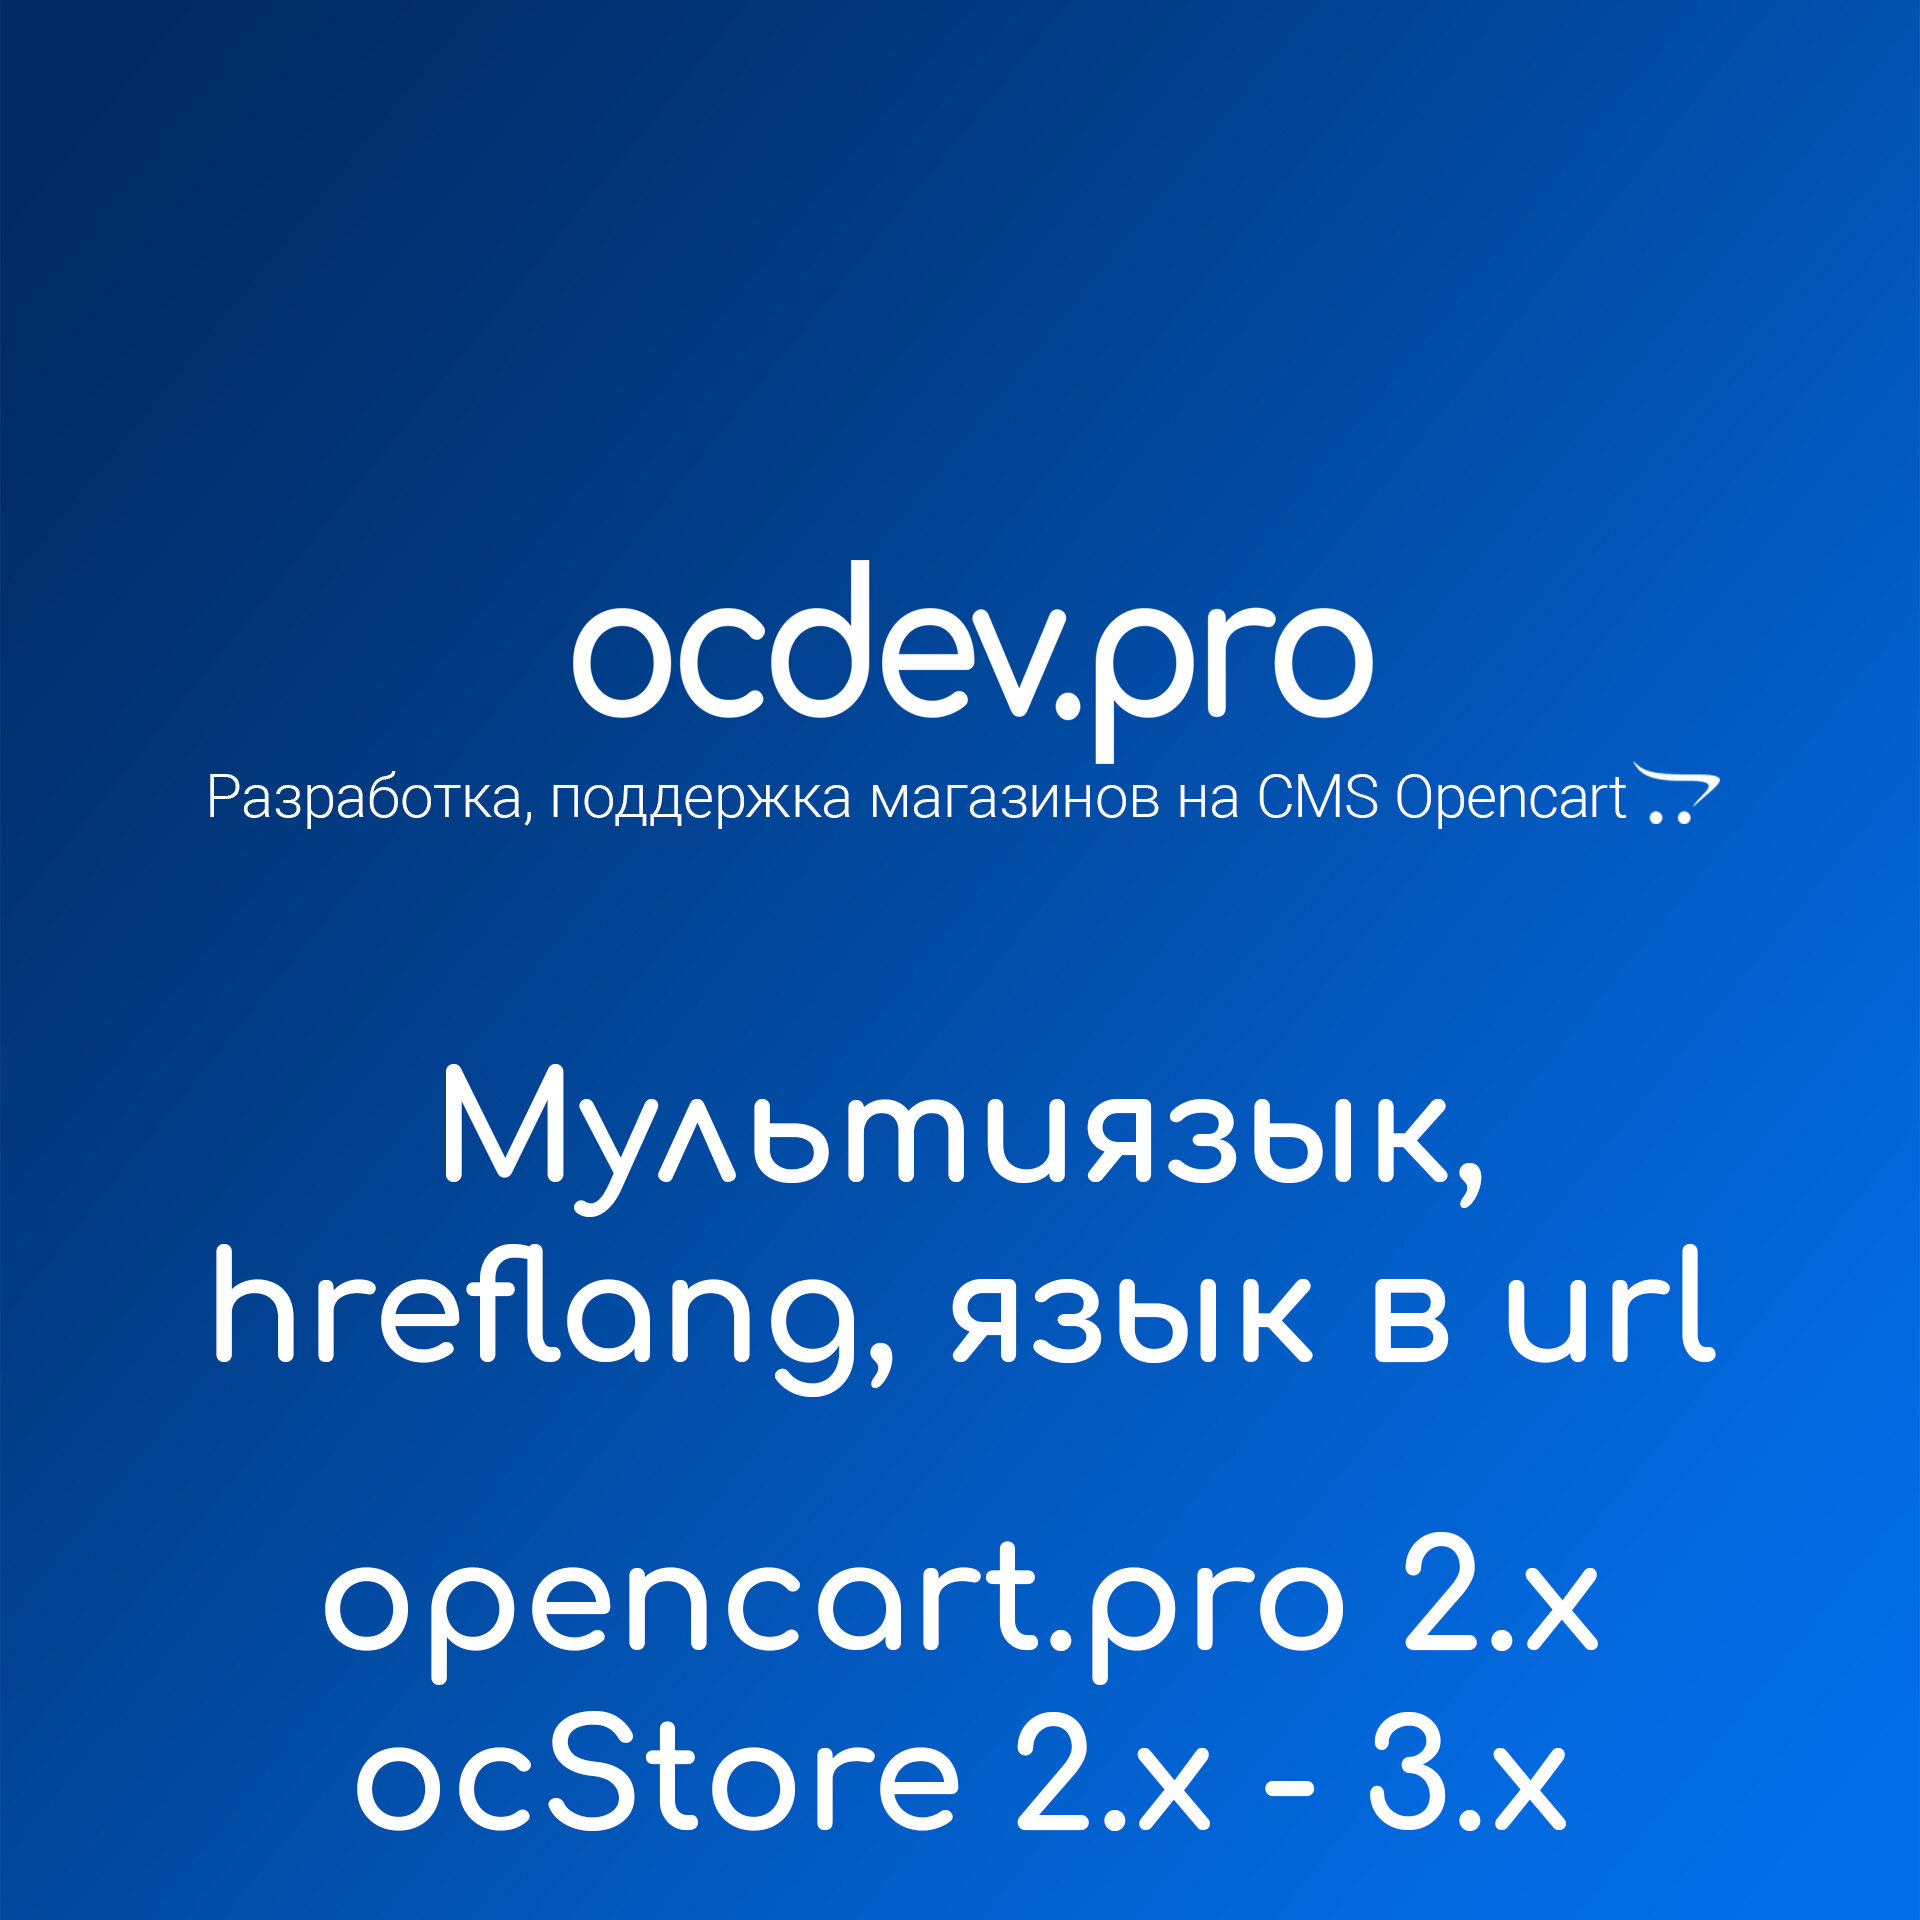 OCDEV.pro - Мультиязык SEO PRO, код языка в url и правильный hreflang 1.3.6